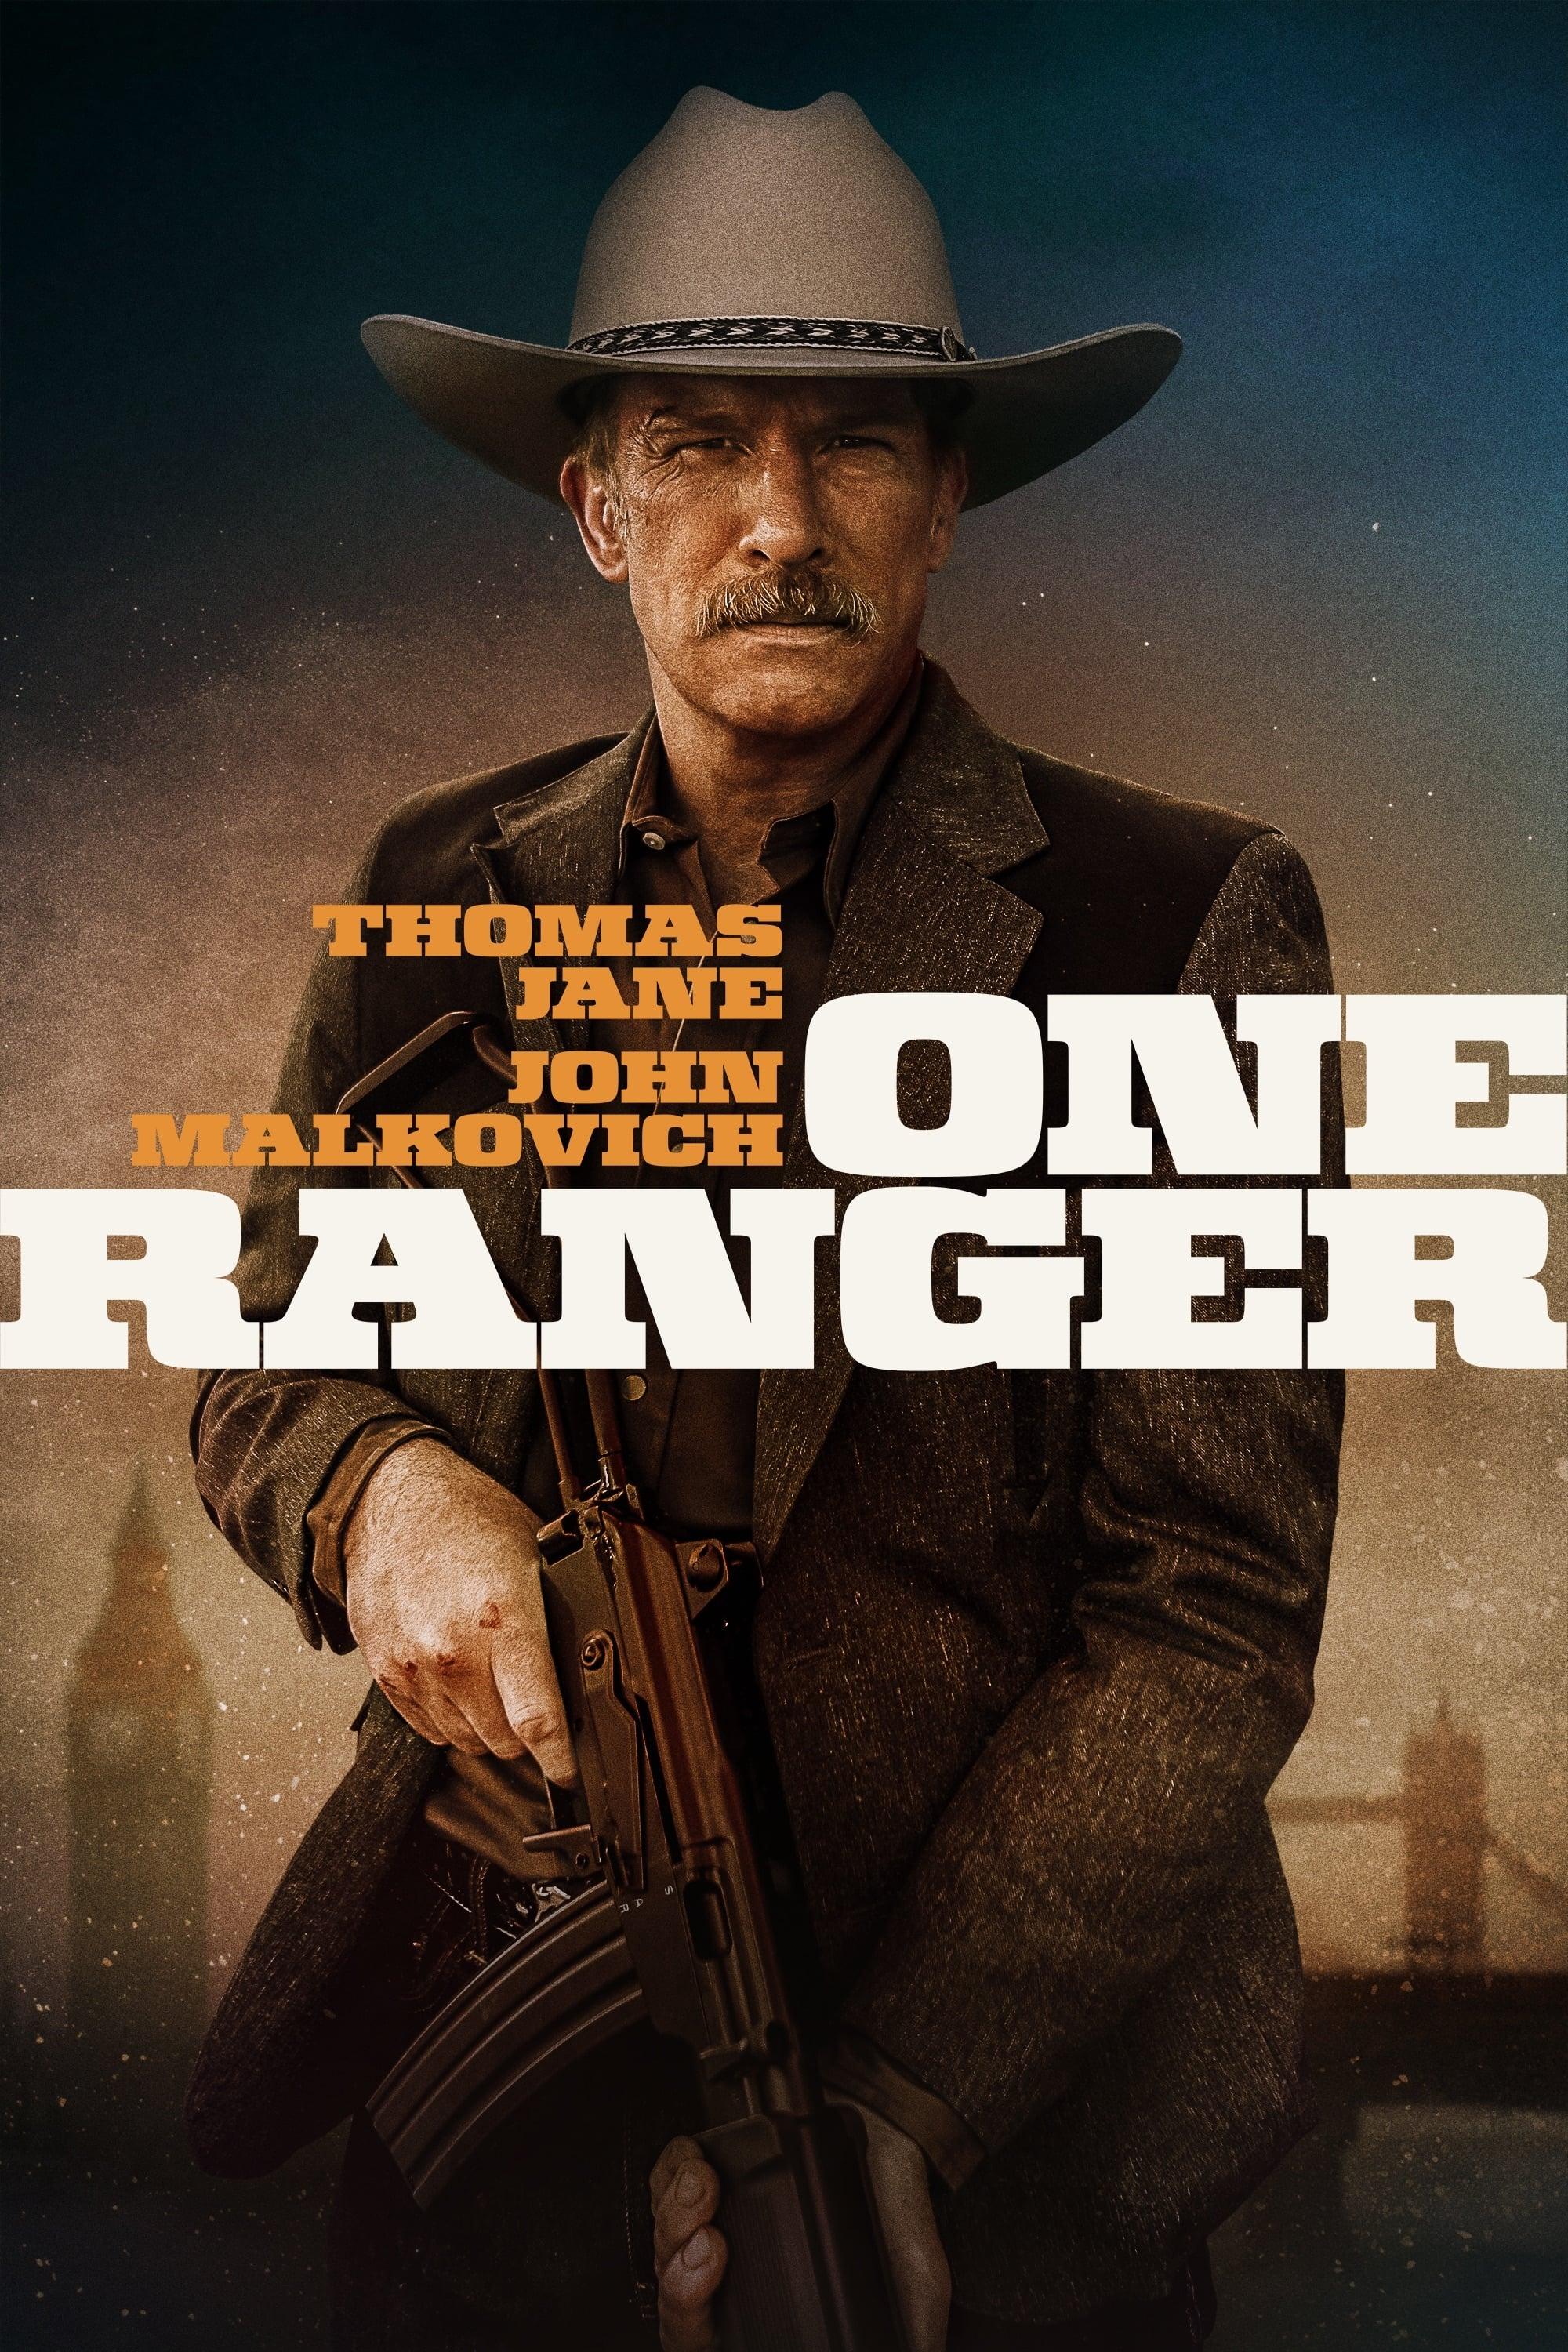 One Ranger poster